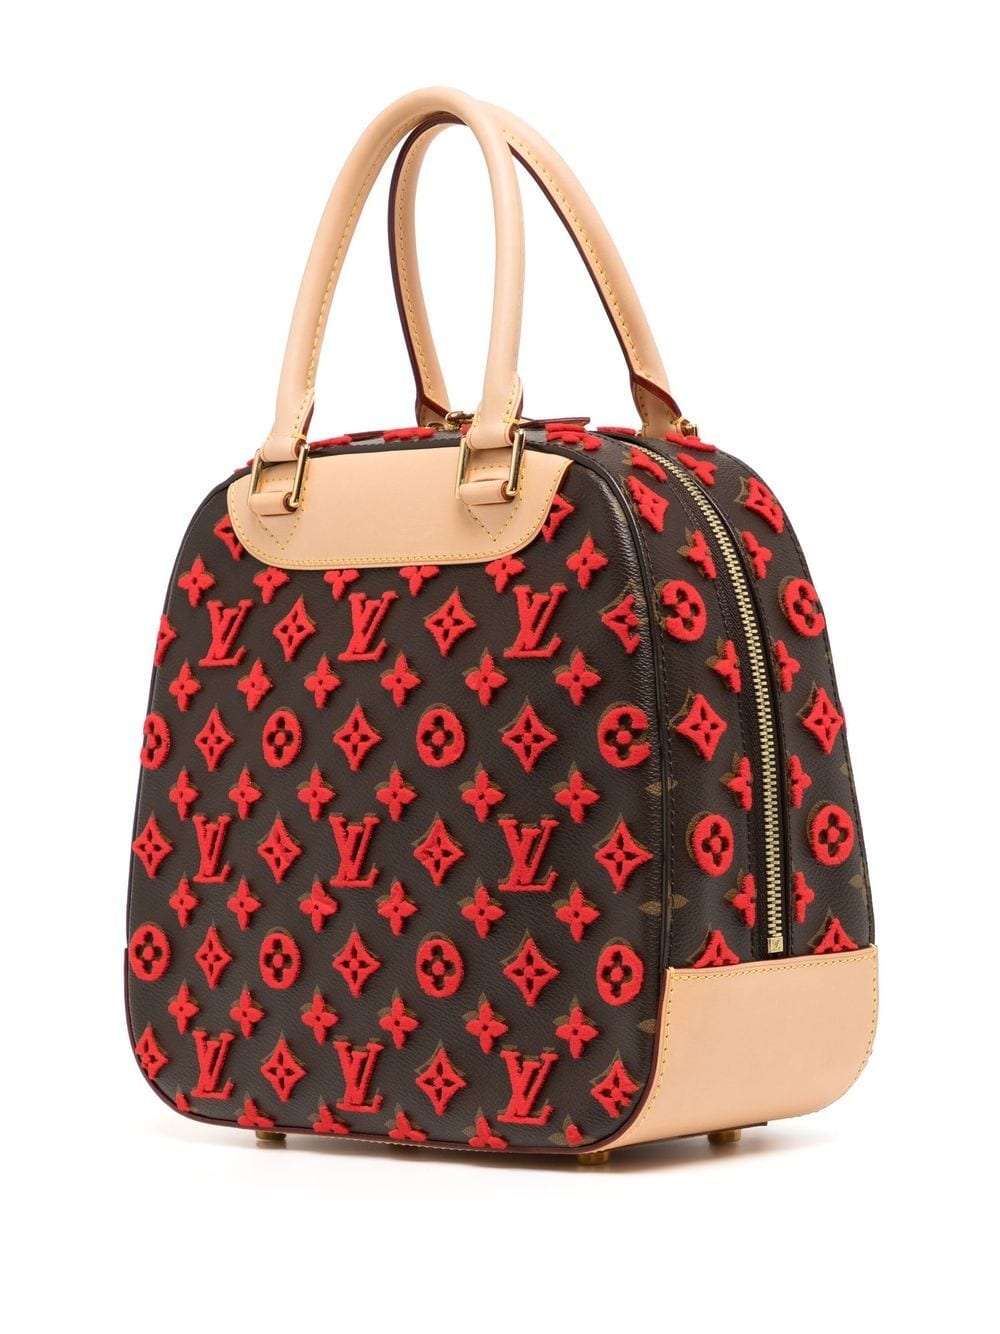 Louis Vuitton 2013 Pre-owned Deauville Cube Top-Handle Bag - Black